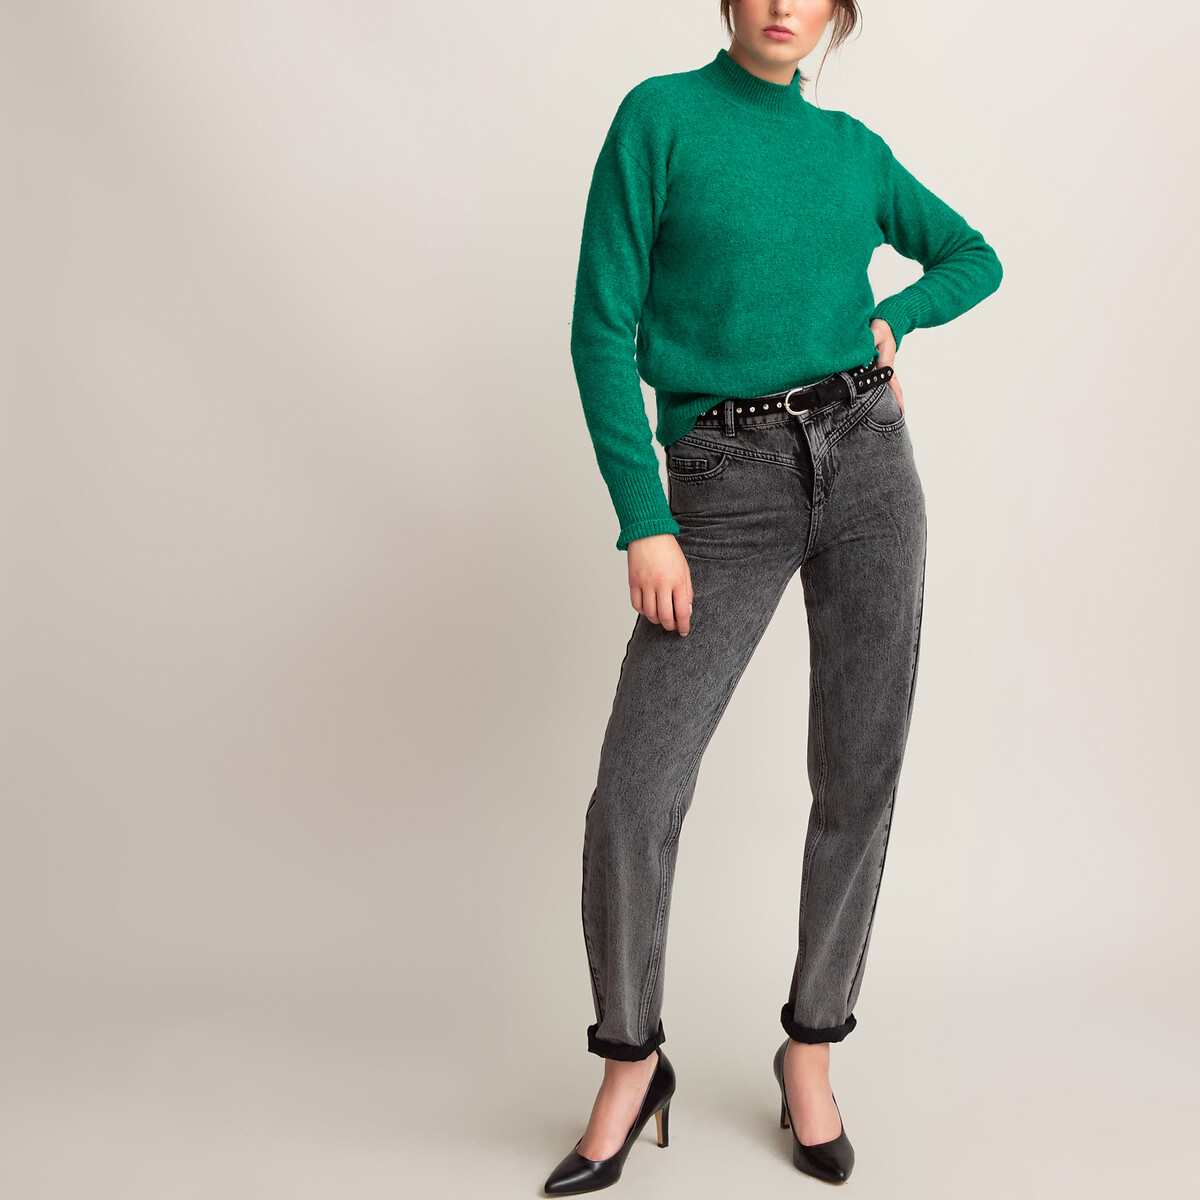 Пуловер La Redoute С воротником-стойкой пушистый трикотаж XL зеленый, размер XL - фото 2